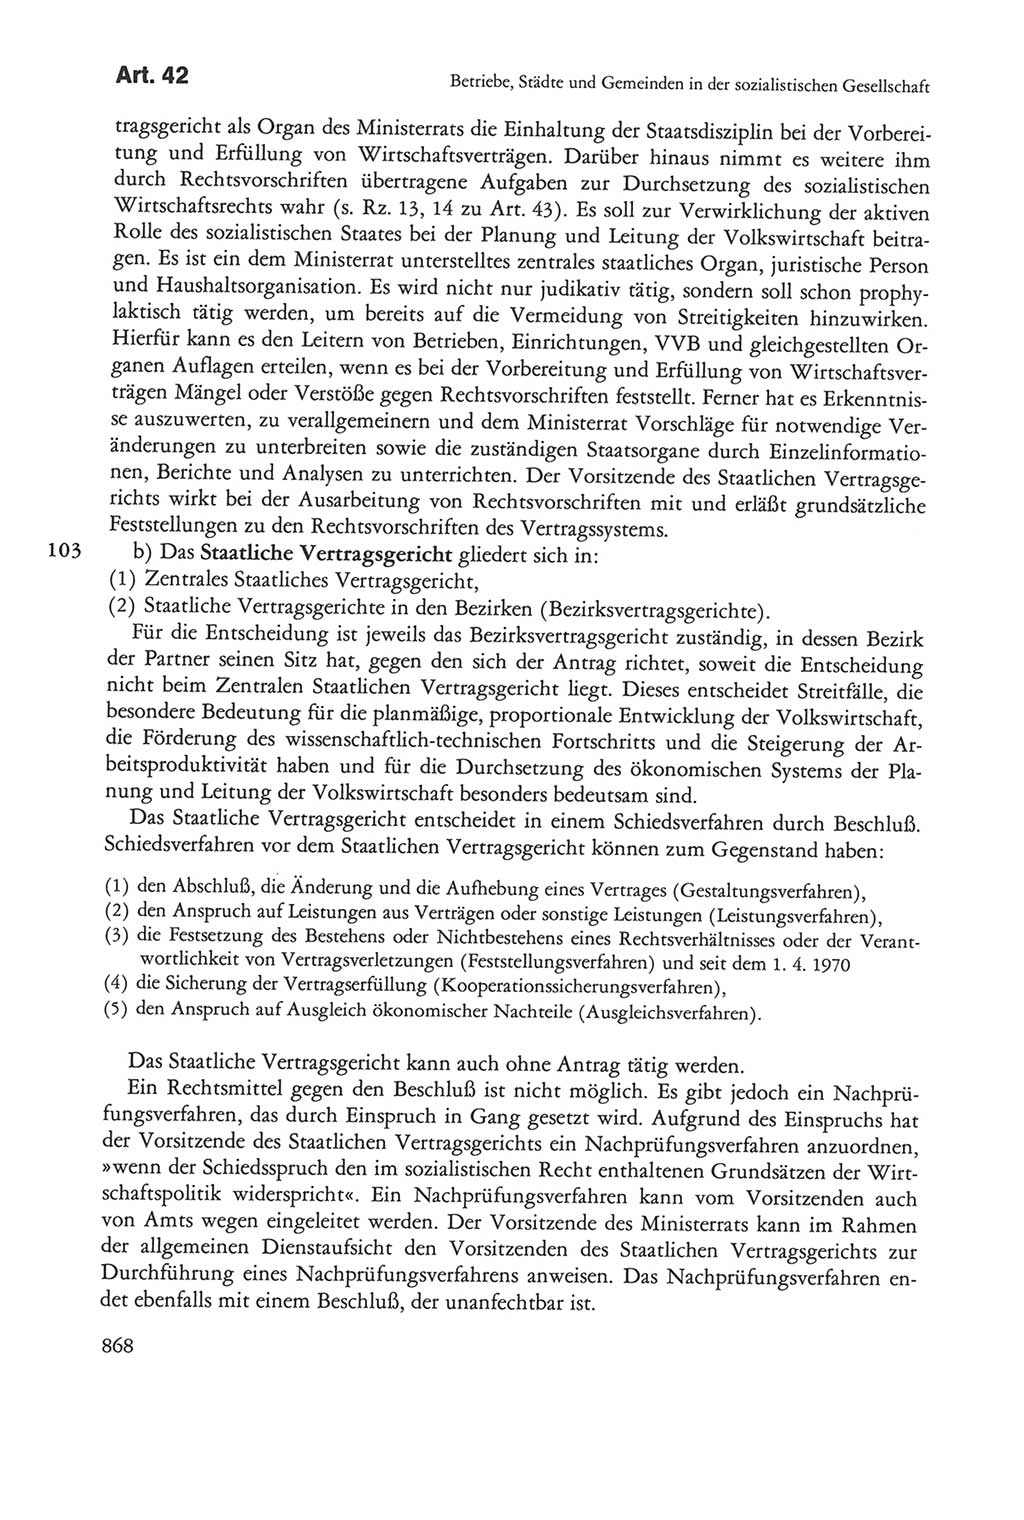 Die sozialistische Verfassung der Deutschen Demokratischen Republik (DDR), Kommentar mit einem Nachtrag 1997, Seite 868 (Soz. Verf. DDR Komm. Nachtr. 1997, S. 868)